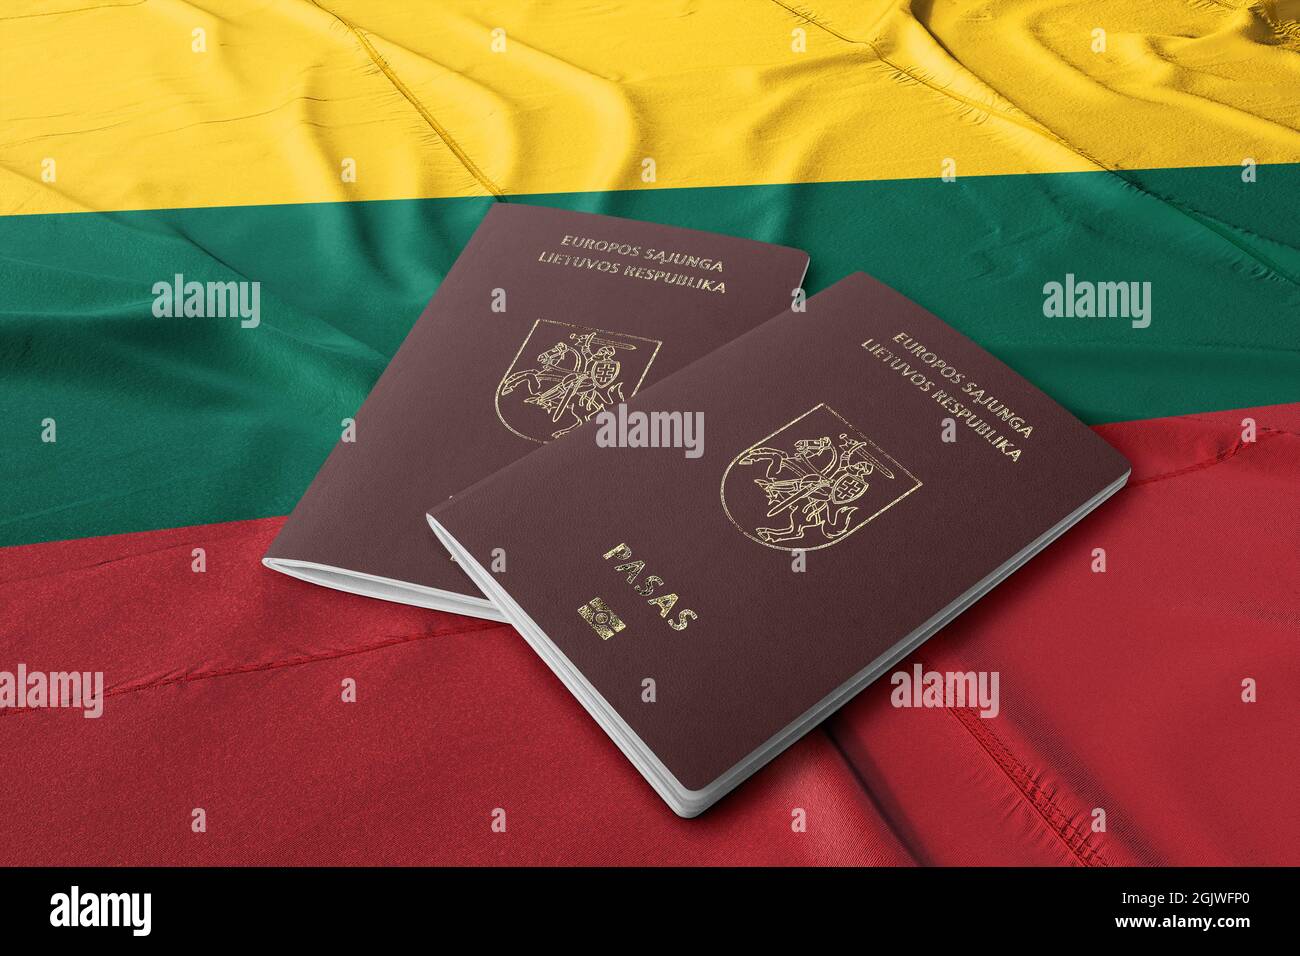 Lituanischen Pass auf seiner Flagge, top shot, ist der Pass die Staatsbürgerschaft der Bürger, der litauische Pass, zusammen mit dem nationalen Personalausweis Stockfoto